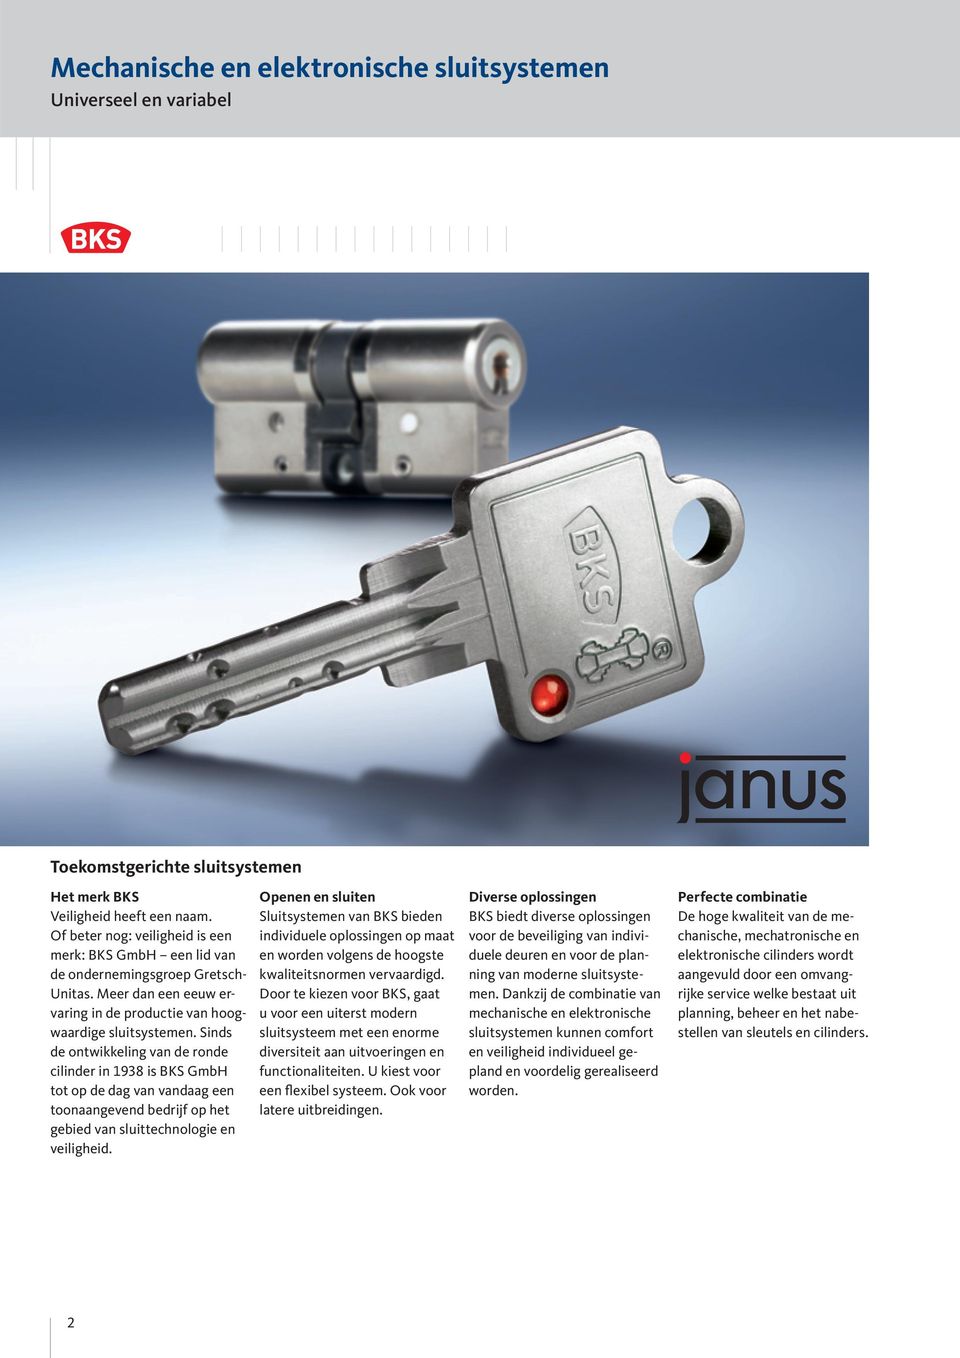 Sinds de ontwikkeling van de ronde cilinder in 1938 is BKS GmbH tot op de dag van vandaag een toonaangevend bedrijf op het gebied van sluittechnologie en veiligheid.